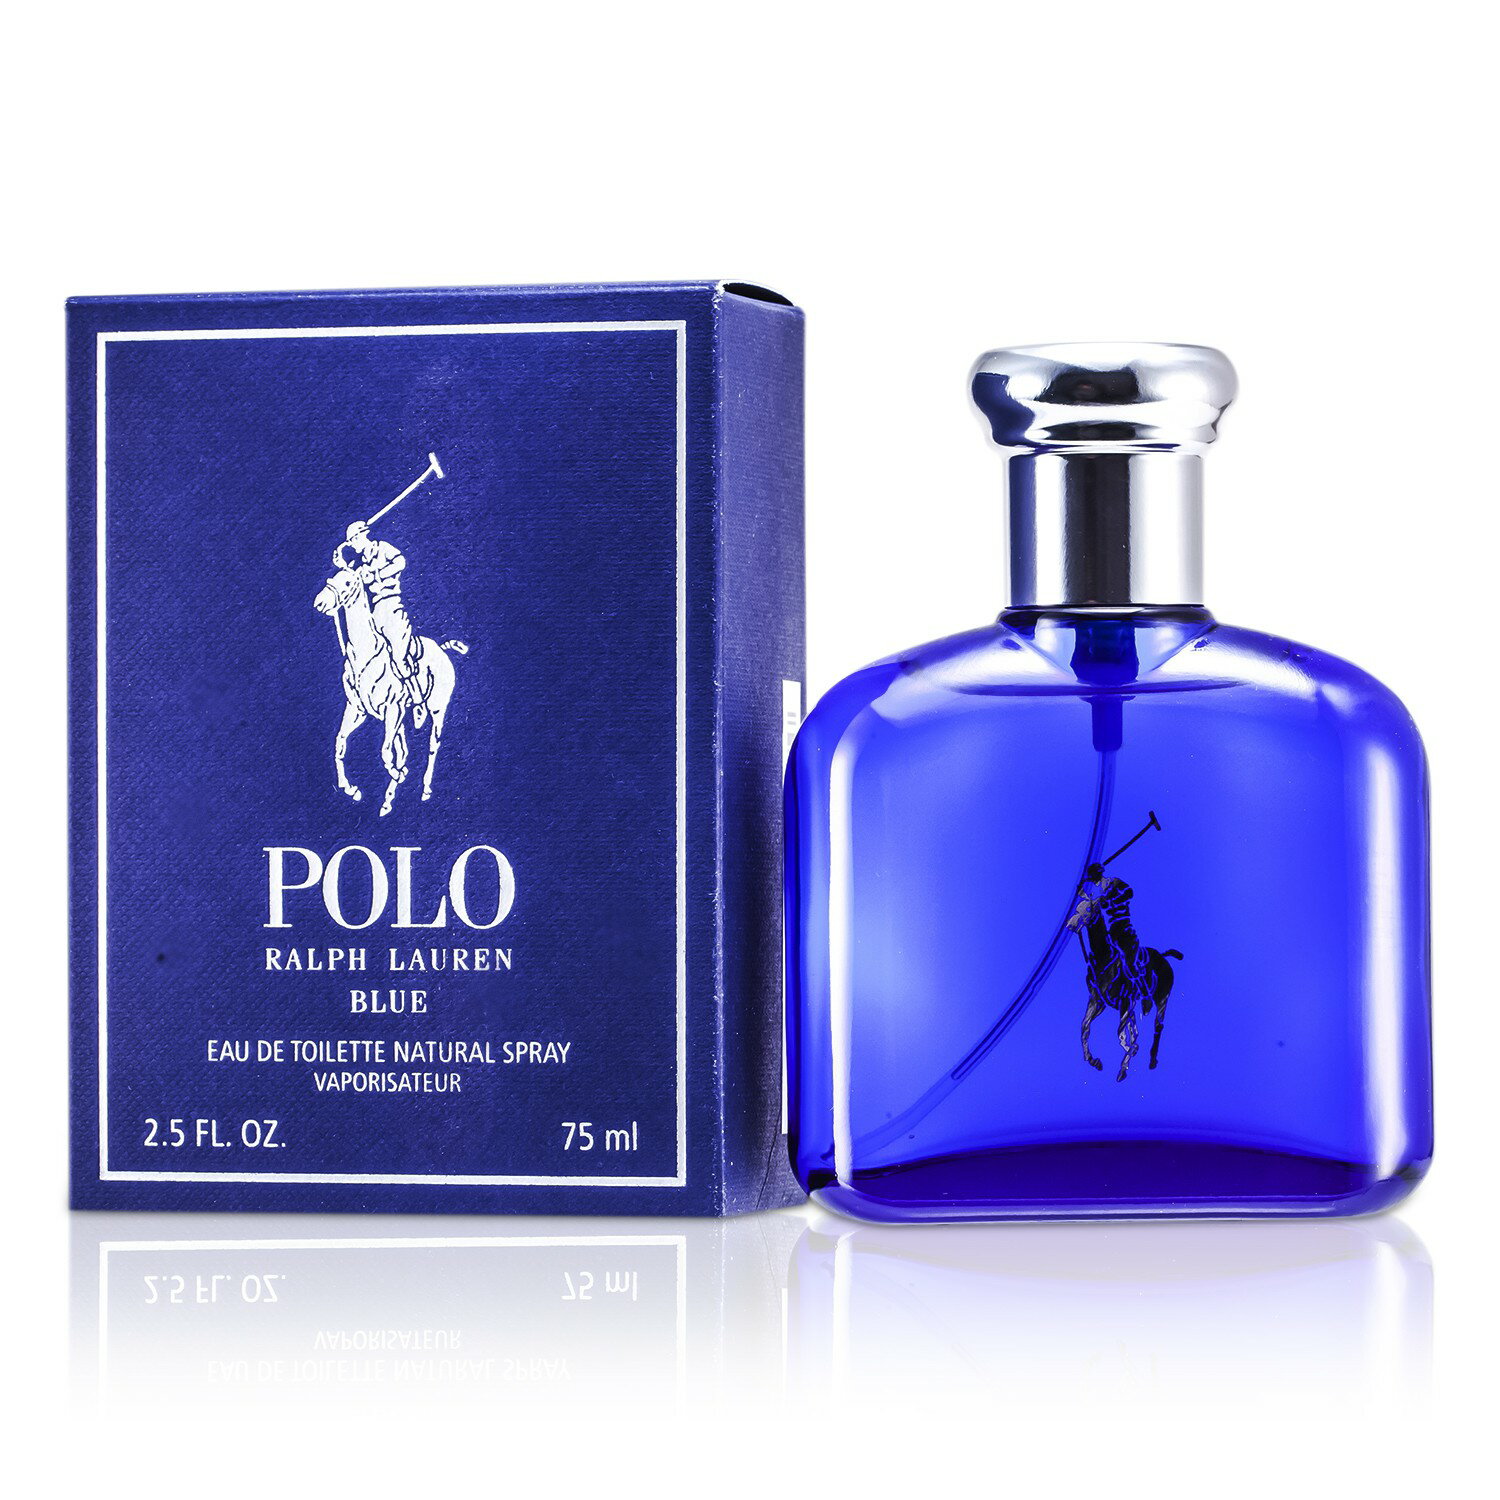 雷夫·羅倫馬球Ralph Lauren - Polo Blue 藍色馬球男性淡香水| 草莓網